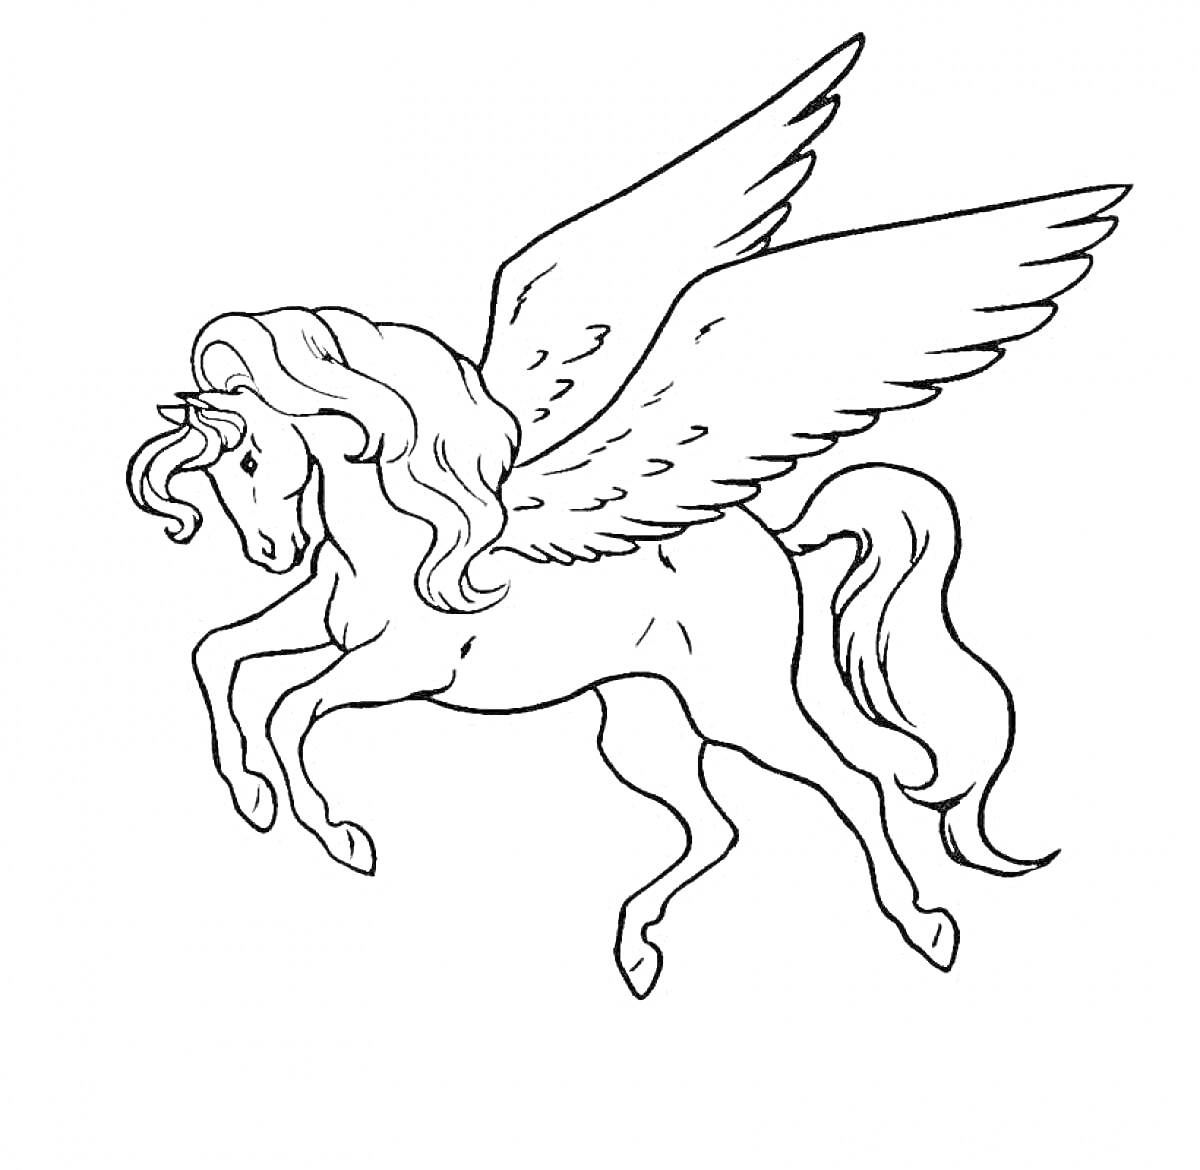 Лошадь с крыльями (пегас), поднимающаяся в воздух